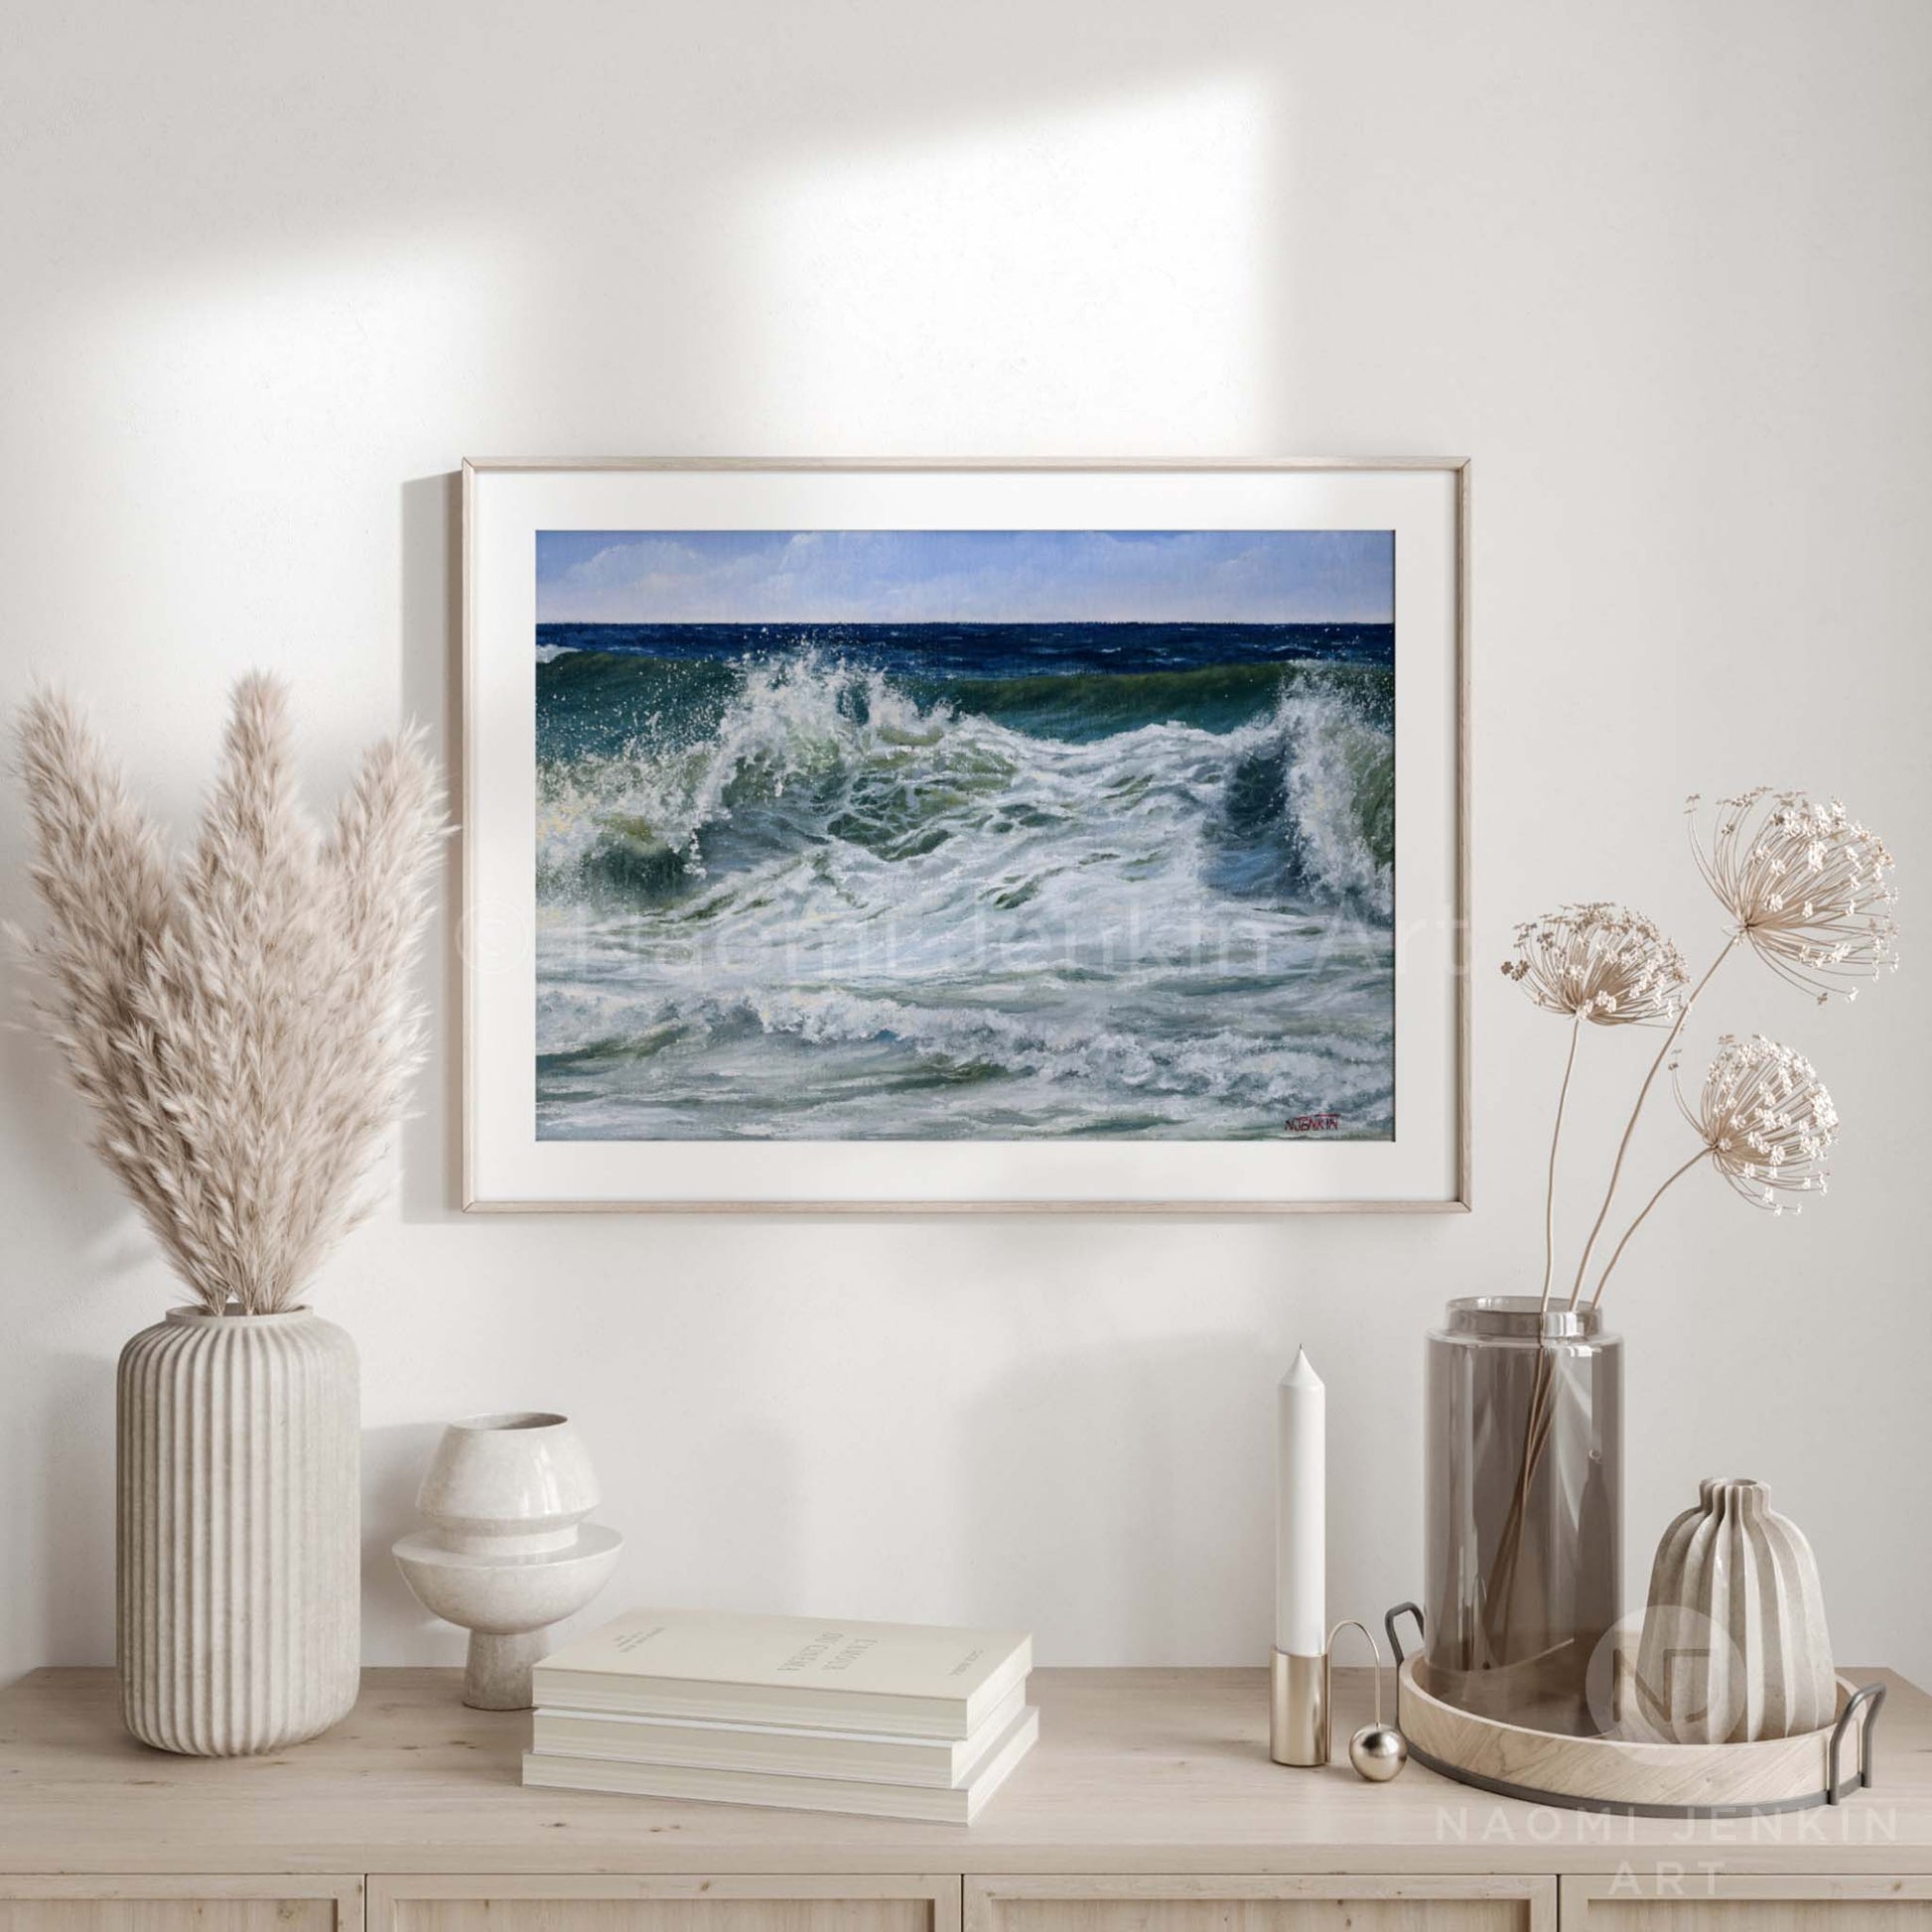 Framed fine art seascape print 'Foamy Surf” by artist Naomi Jenkin